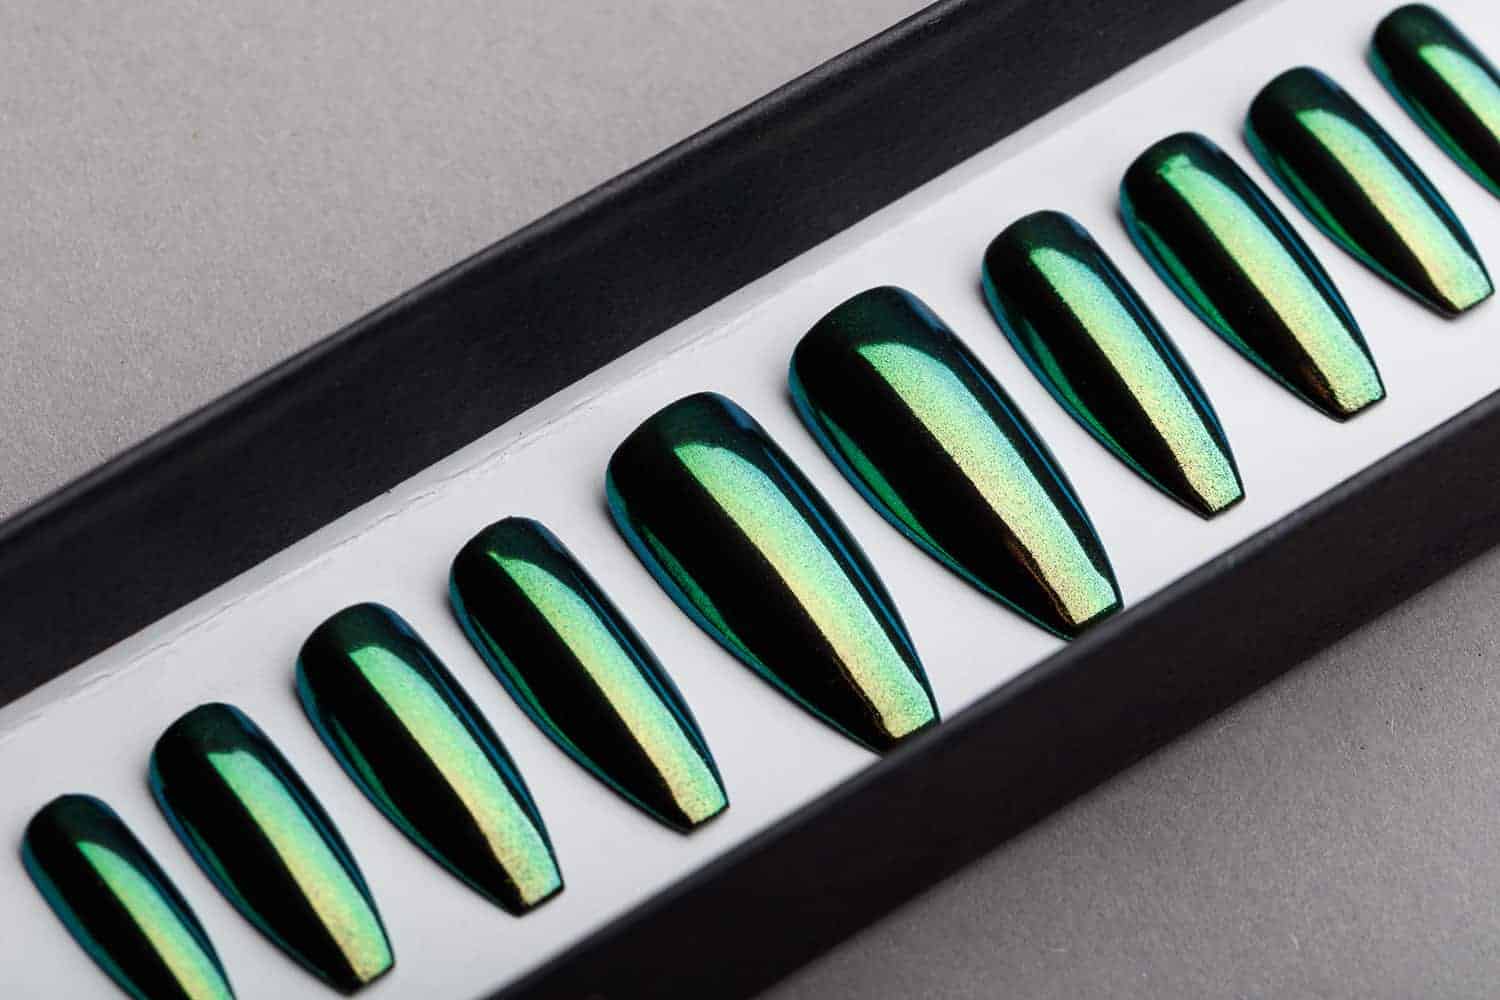 Green Mirror Press on Nails | Nude Nails | Handpainted Nail Art | Fake Nails | False Nails | Unicorn Nails | Chrome nails | Manicure